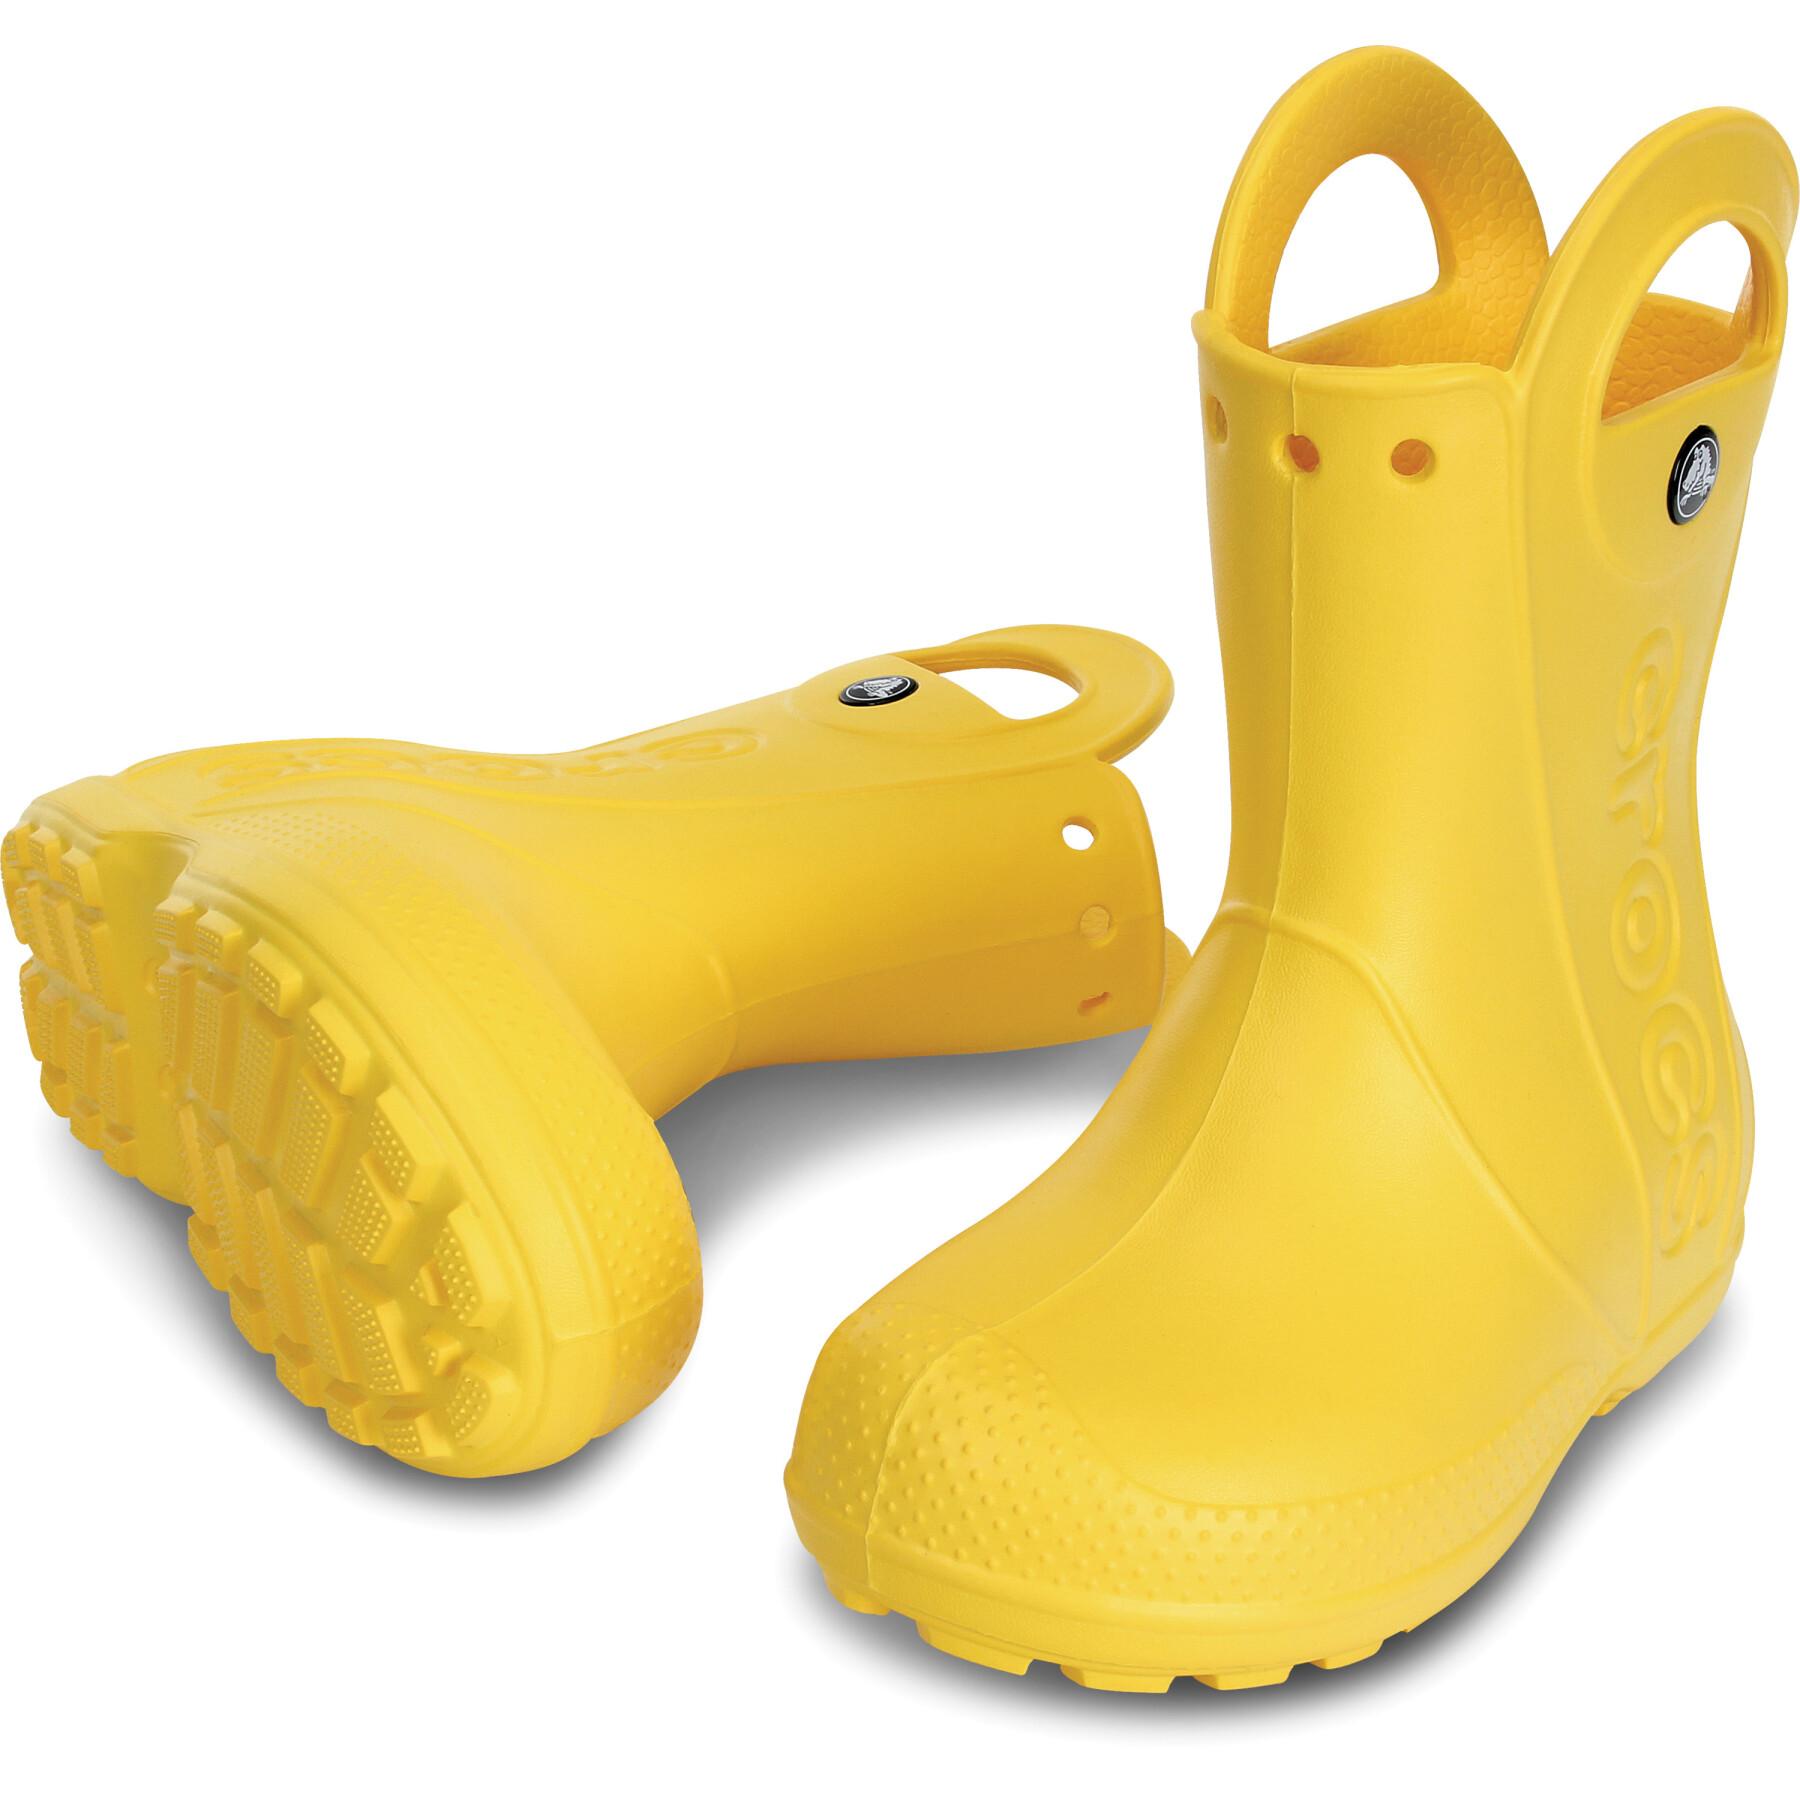 Dziecięce buty przeciwdeszczowe Crocs handle it rain